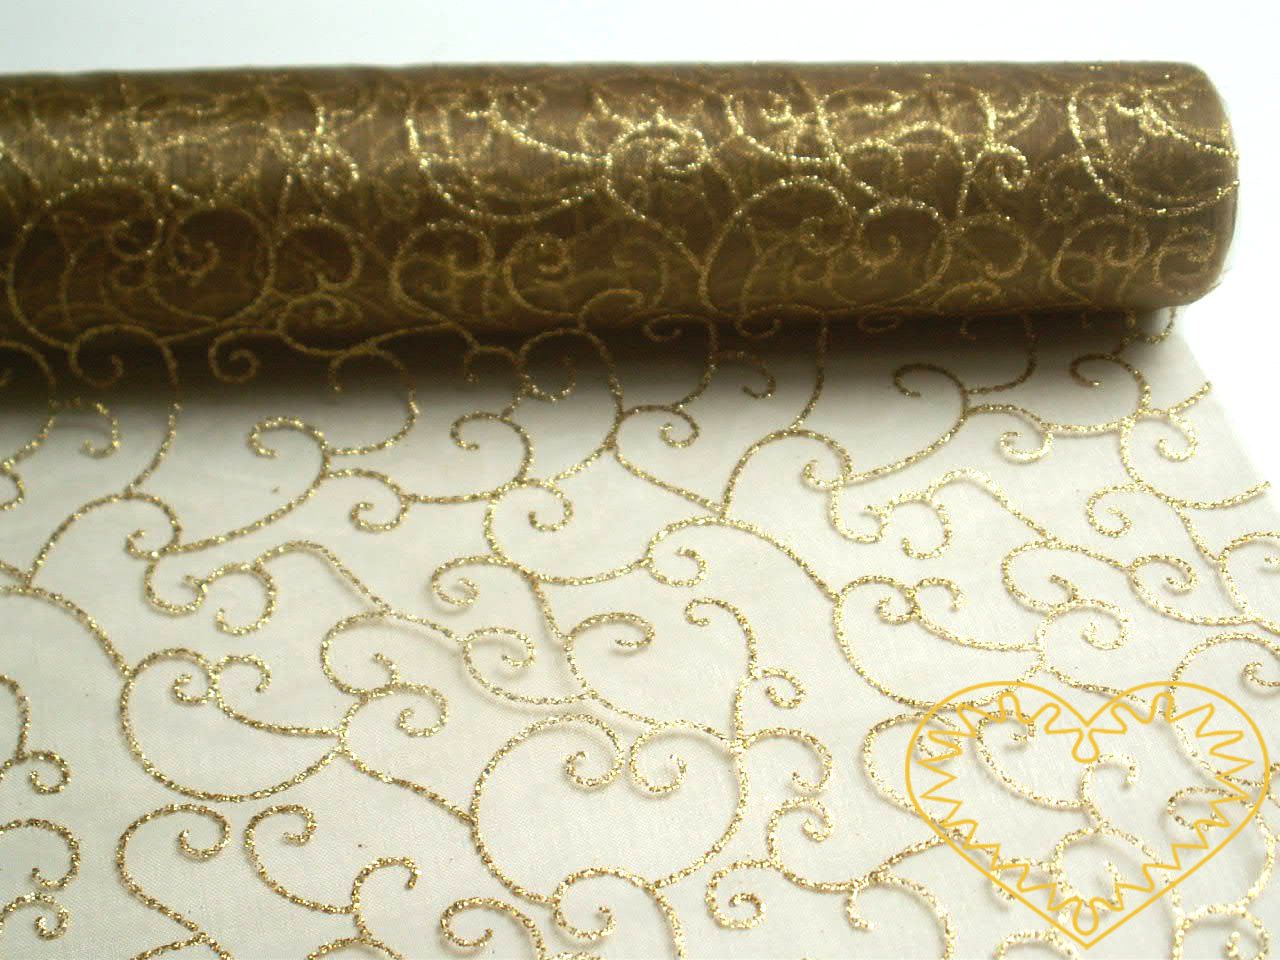 Organza zlatá se zlatým třpytivým vzorem - šíře 40 cm, délka 5 m. Vypadá velice slavnostně a reprezentativně. Vhodná k dekorování, aranžování a výzdobě slavnostní tabule, pro balení dárků, ozdob, broží apod.